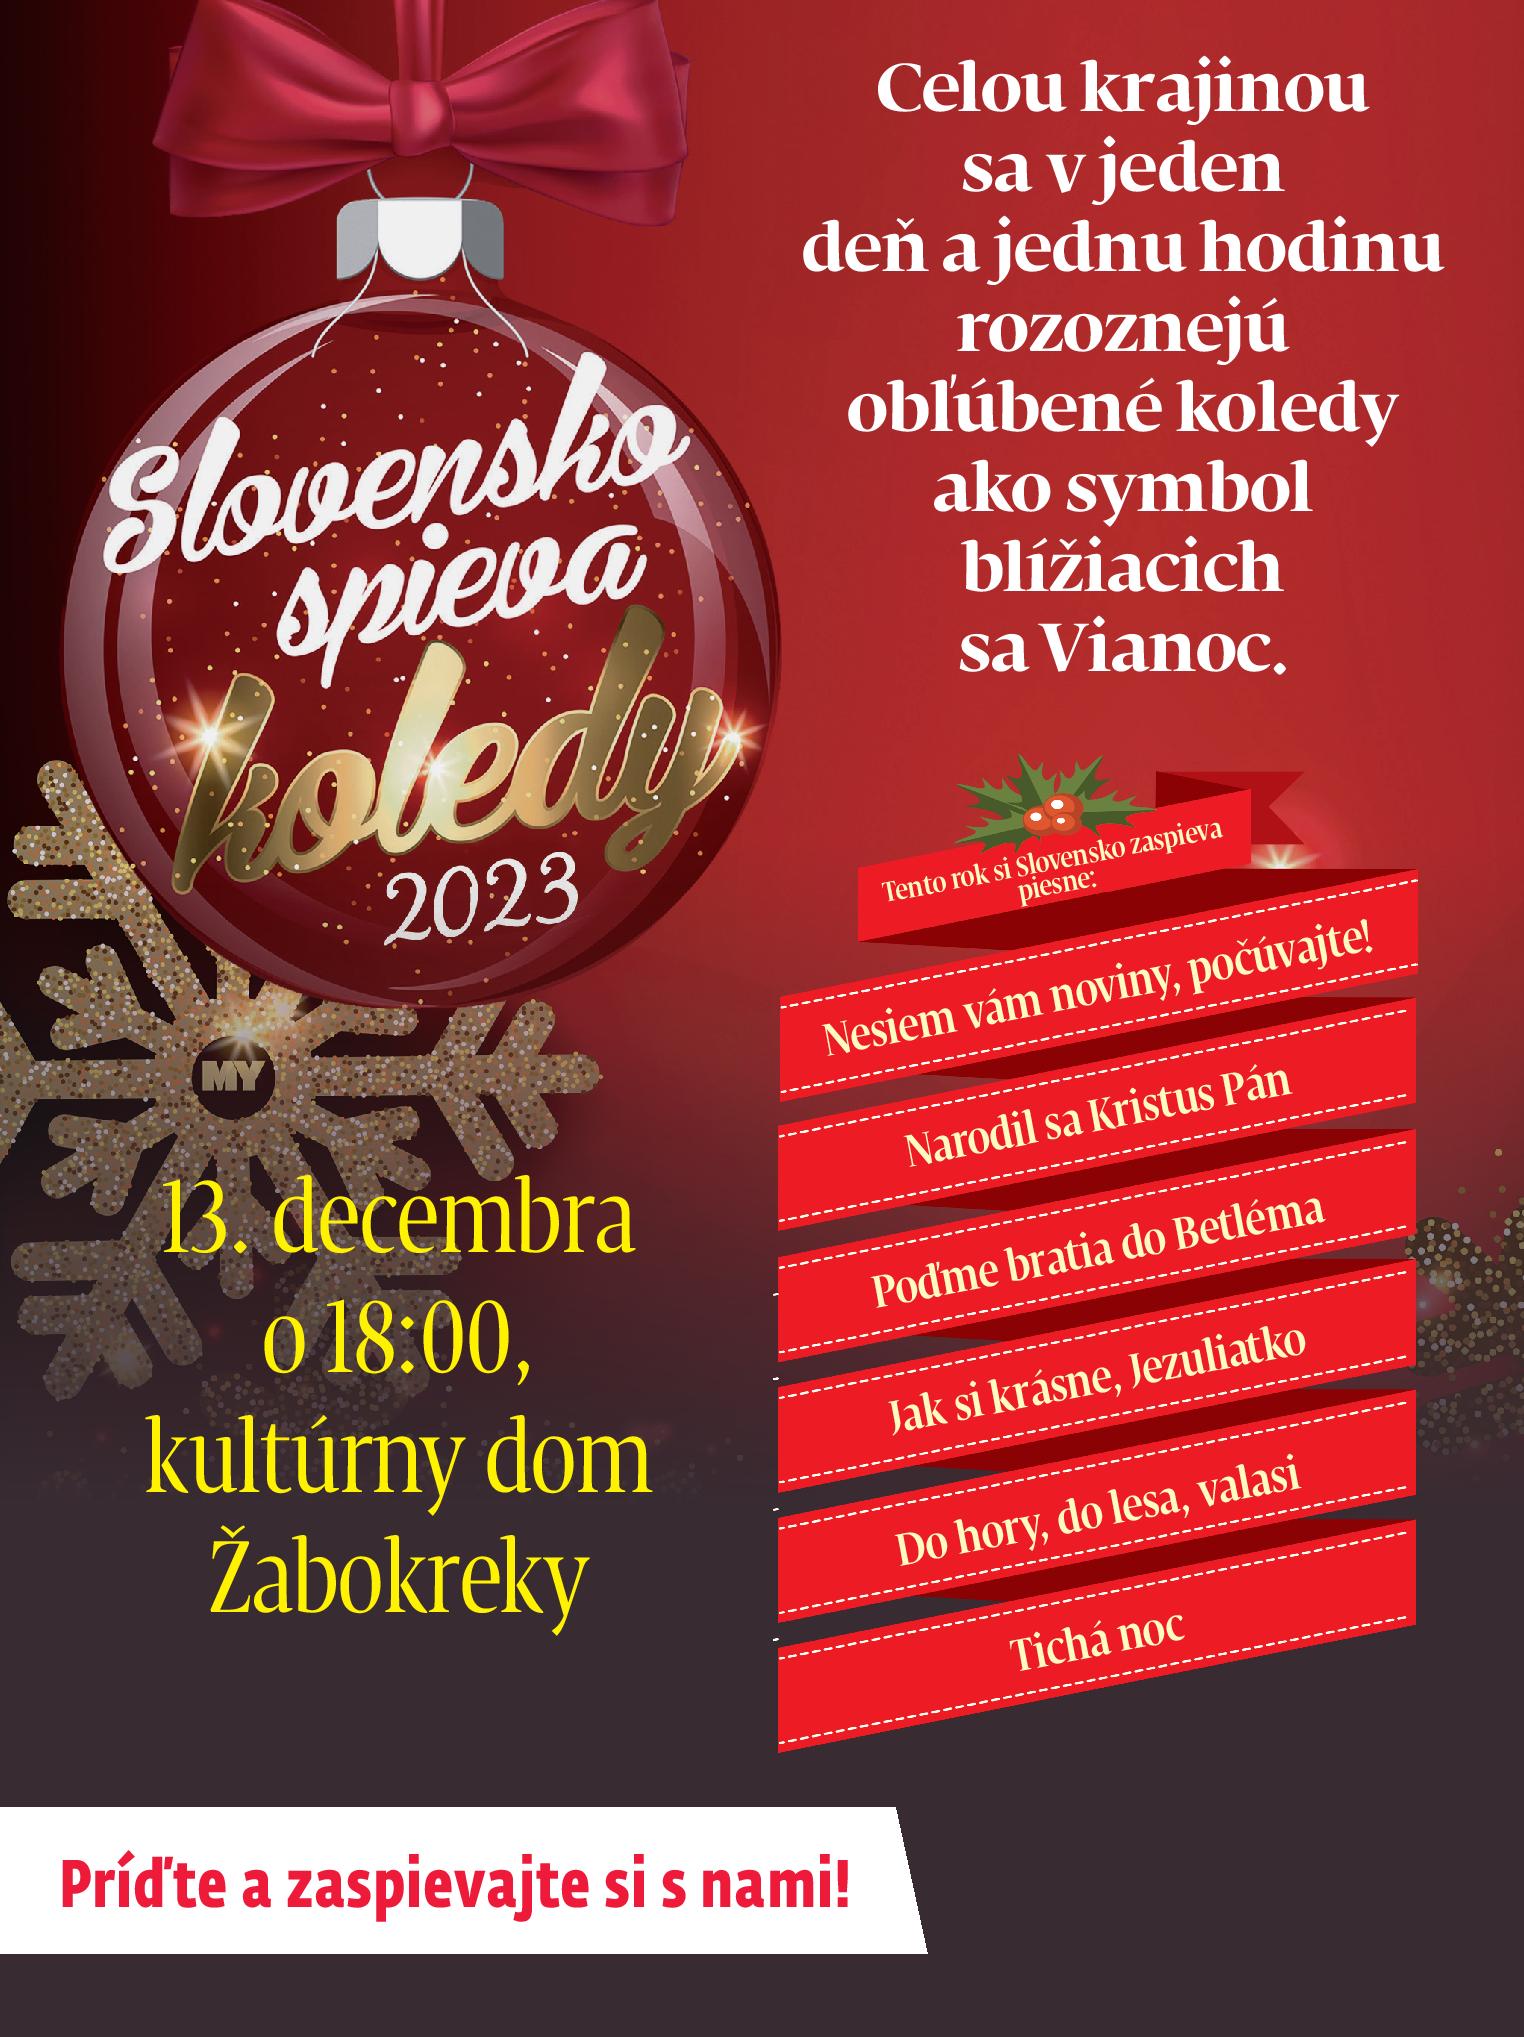 Slovensko spieva koledy 2023 abokreky - 8. ronk